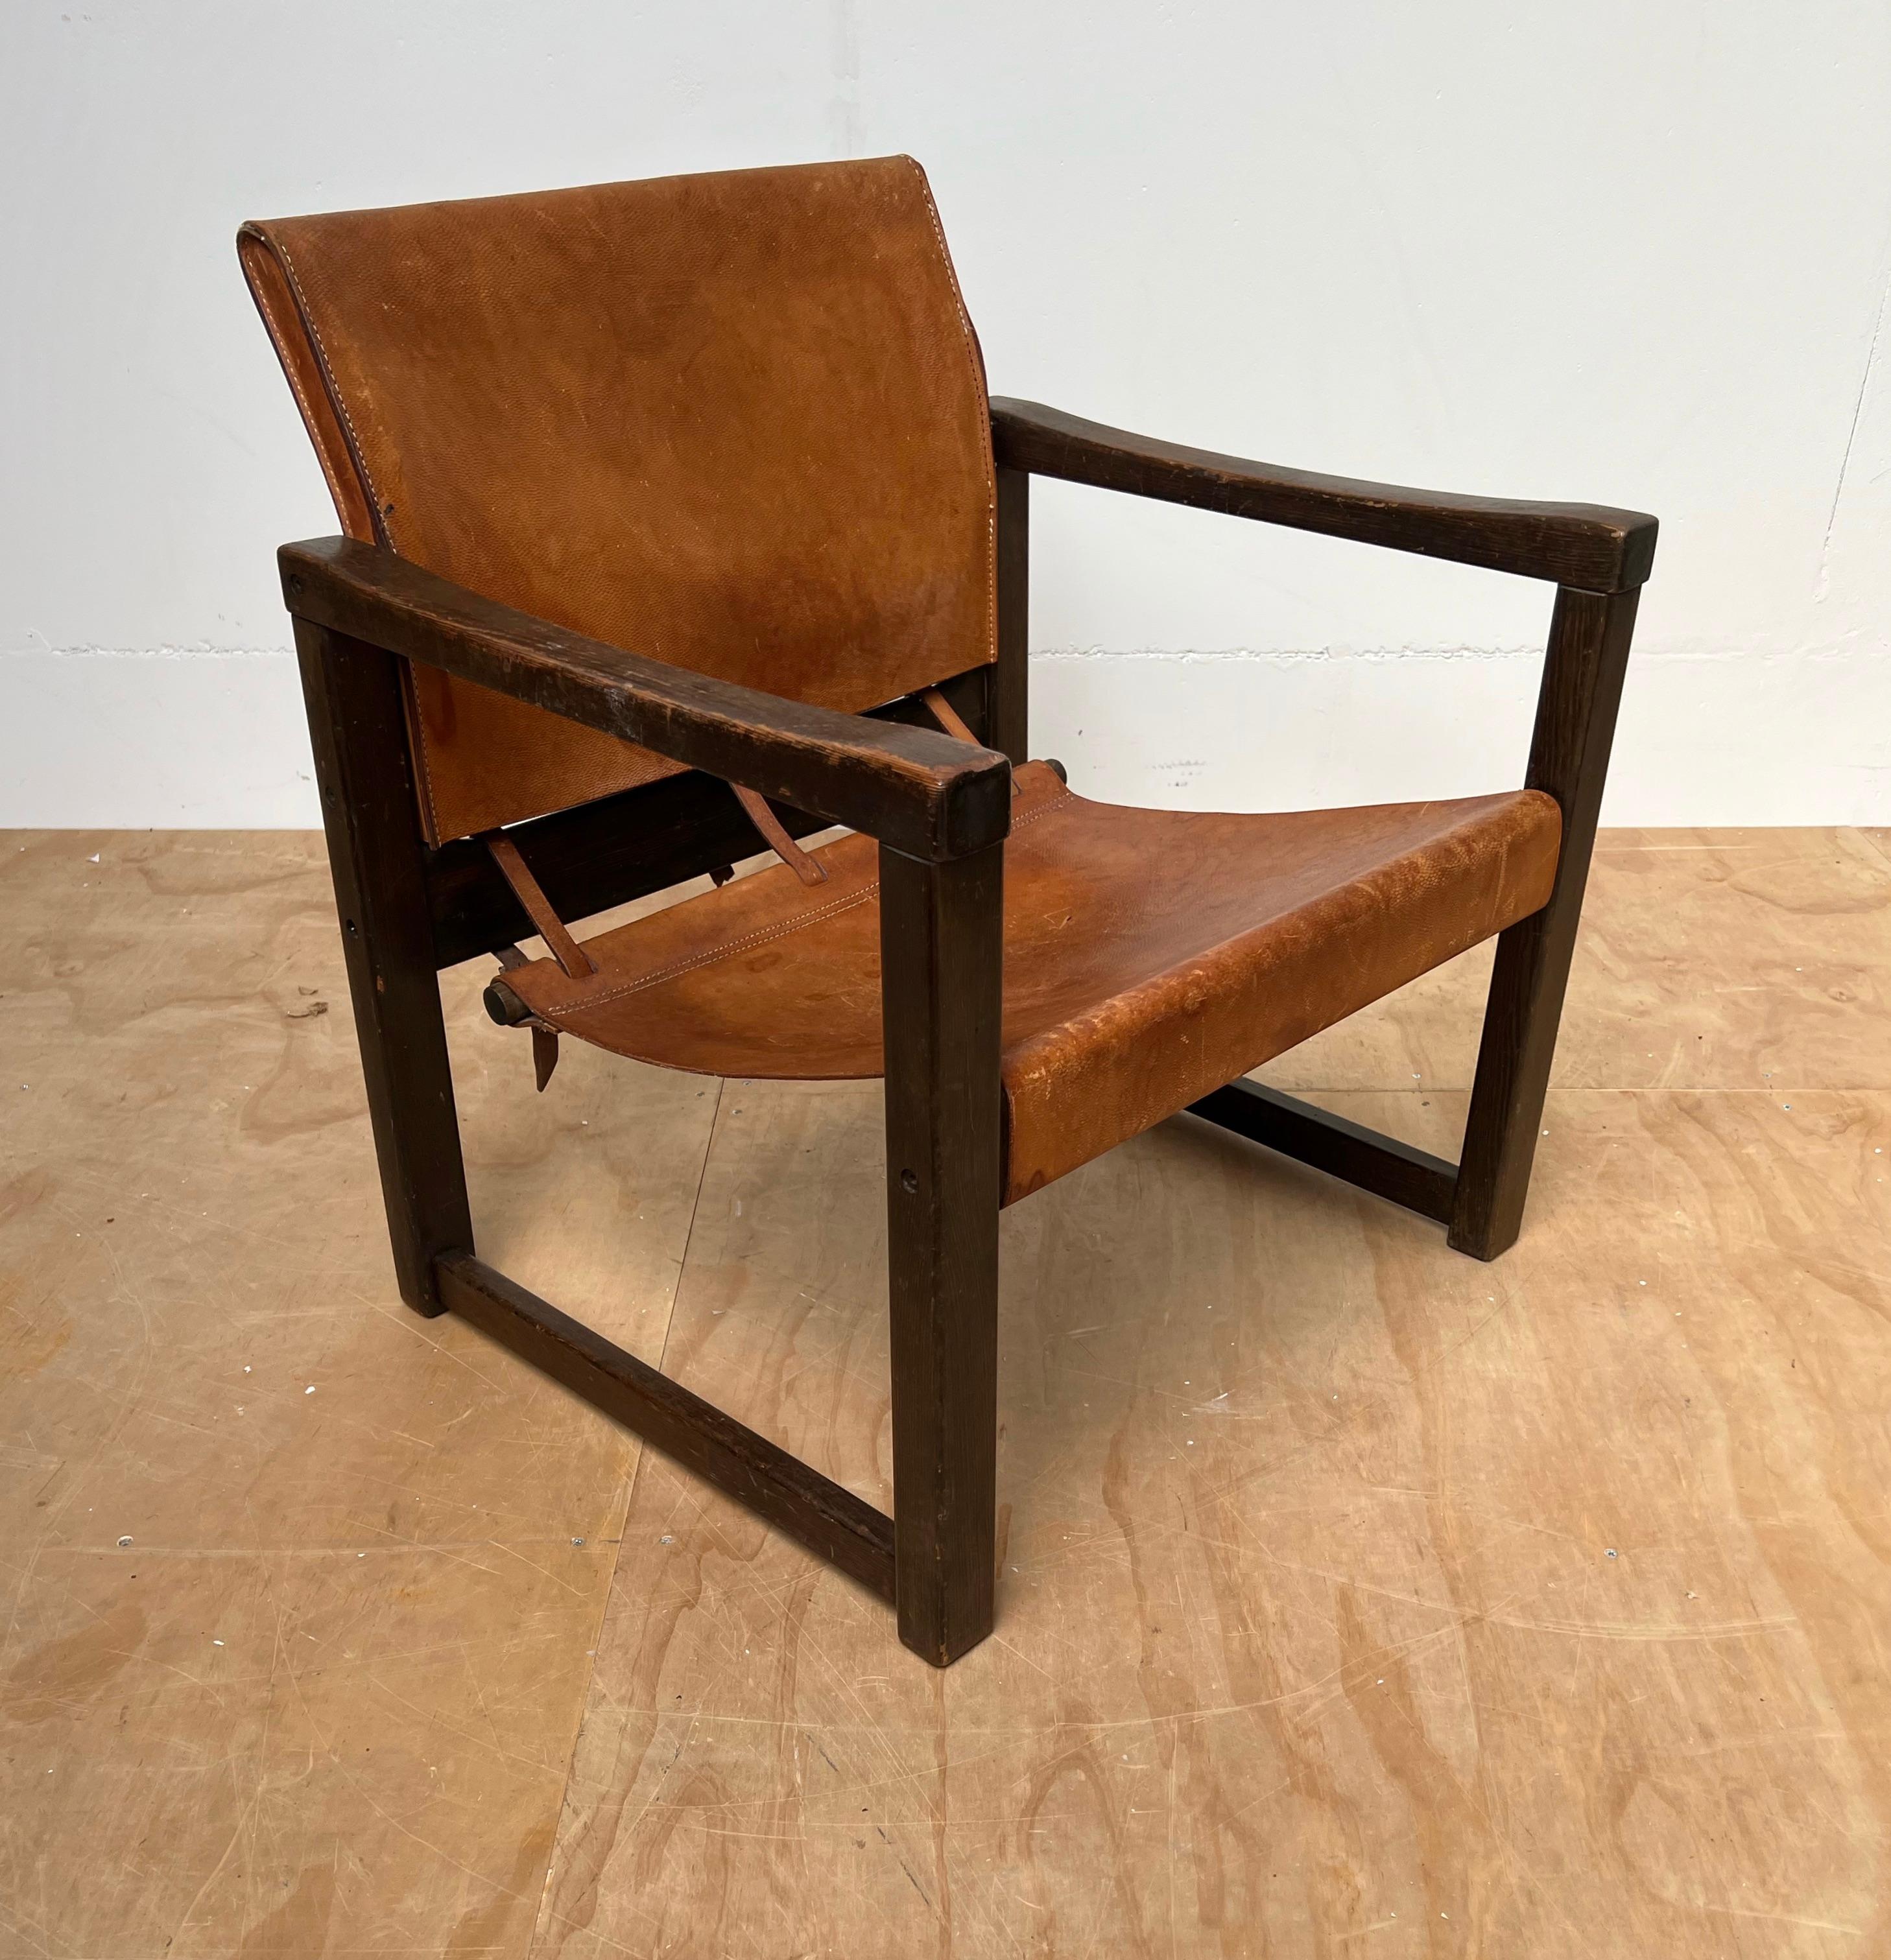 Un design magnifique et une chaise étonnante dans son état d'origine.

Le design et l'aspect de cette chaise rare m'ont rappelé ce que quelqu'un m'a appris un jour à propos des bonnes sculptures : 